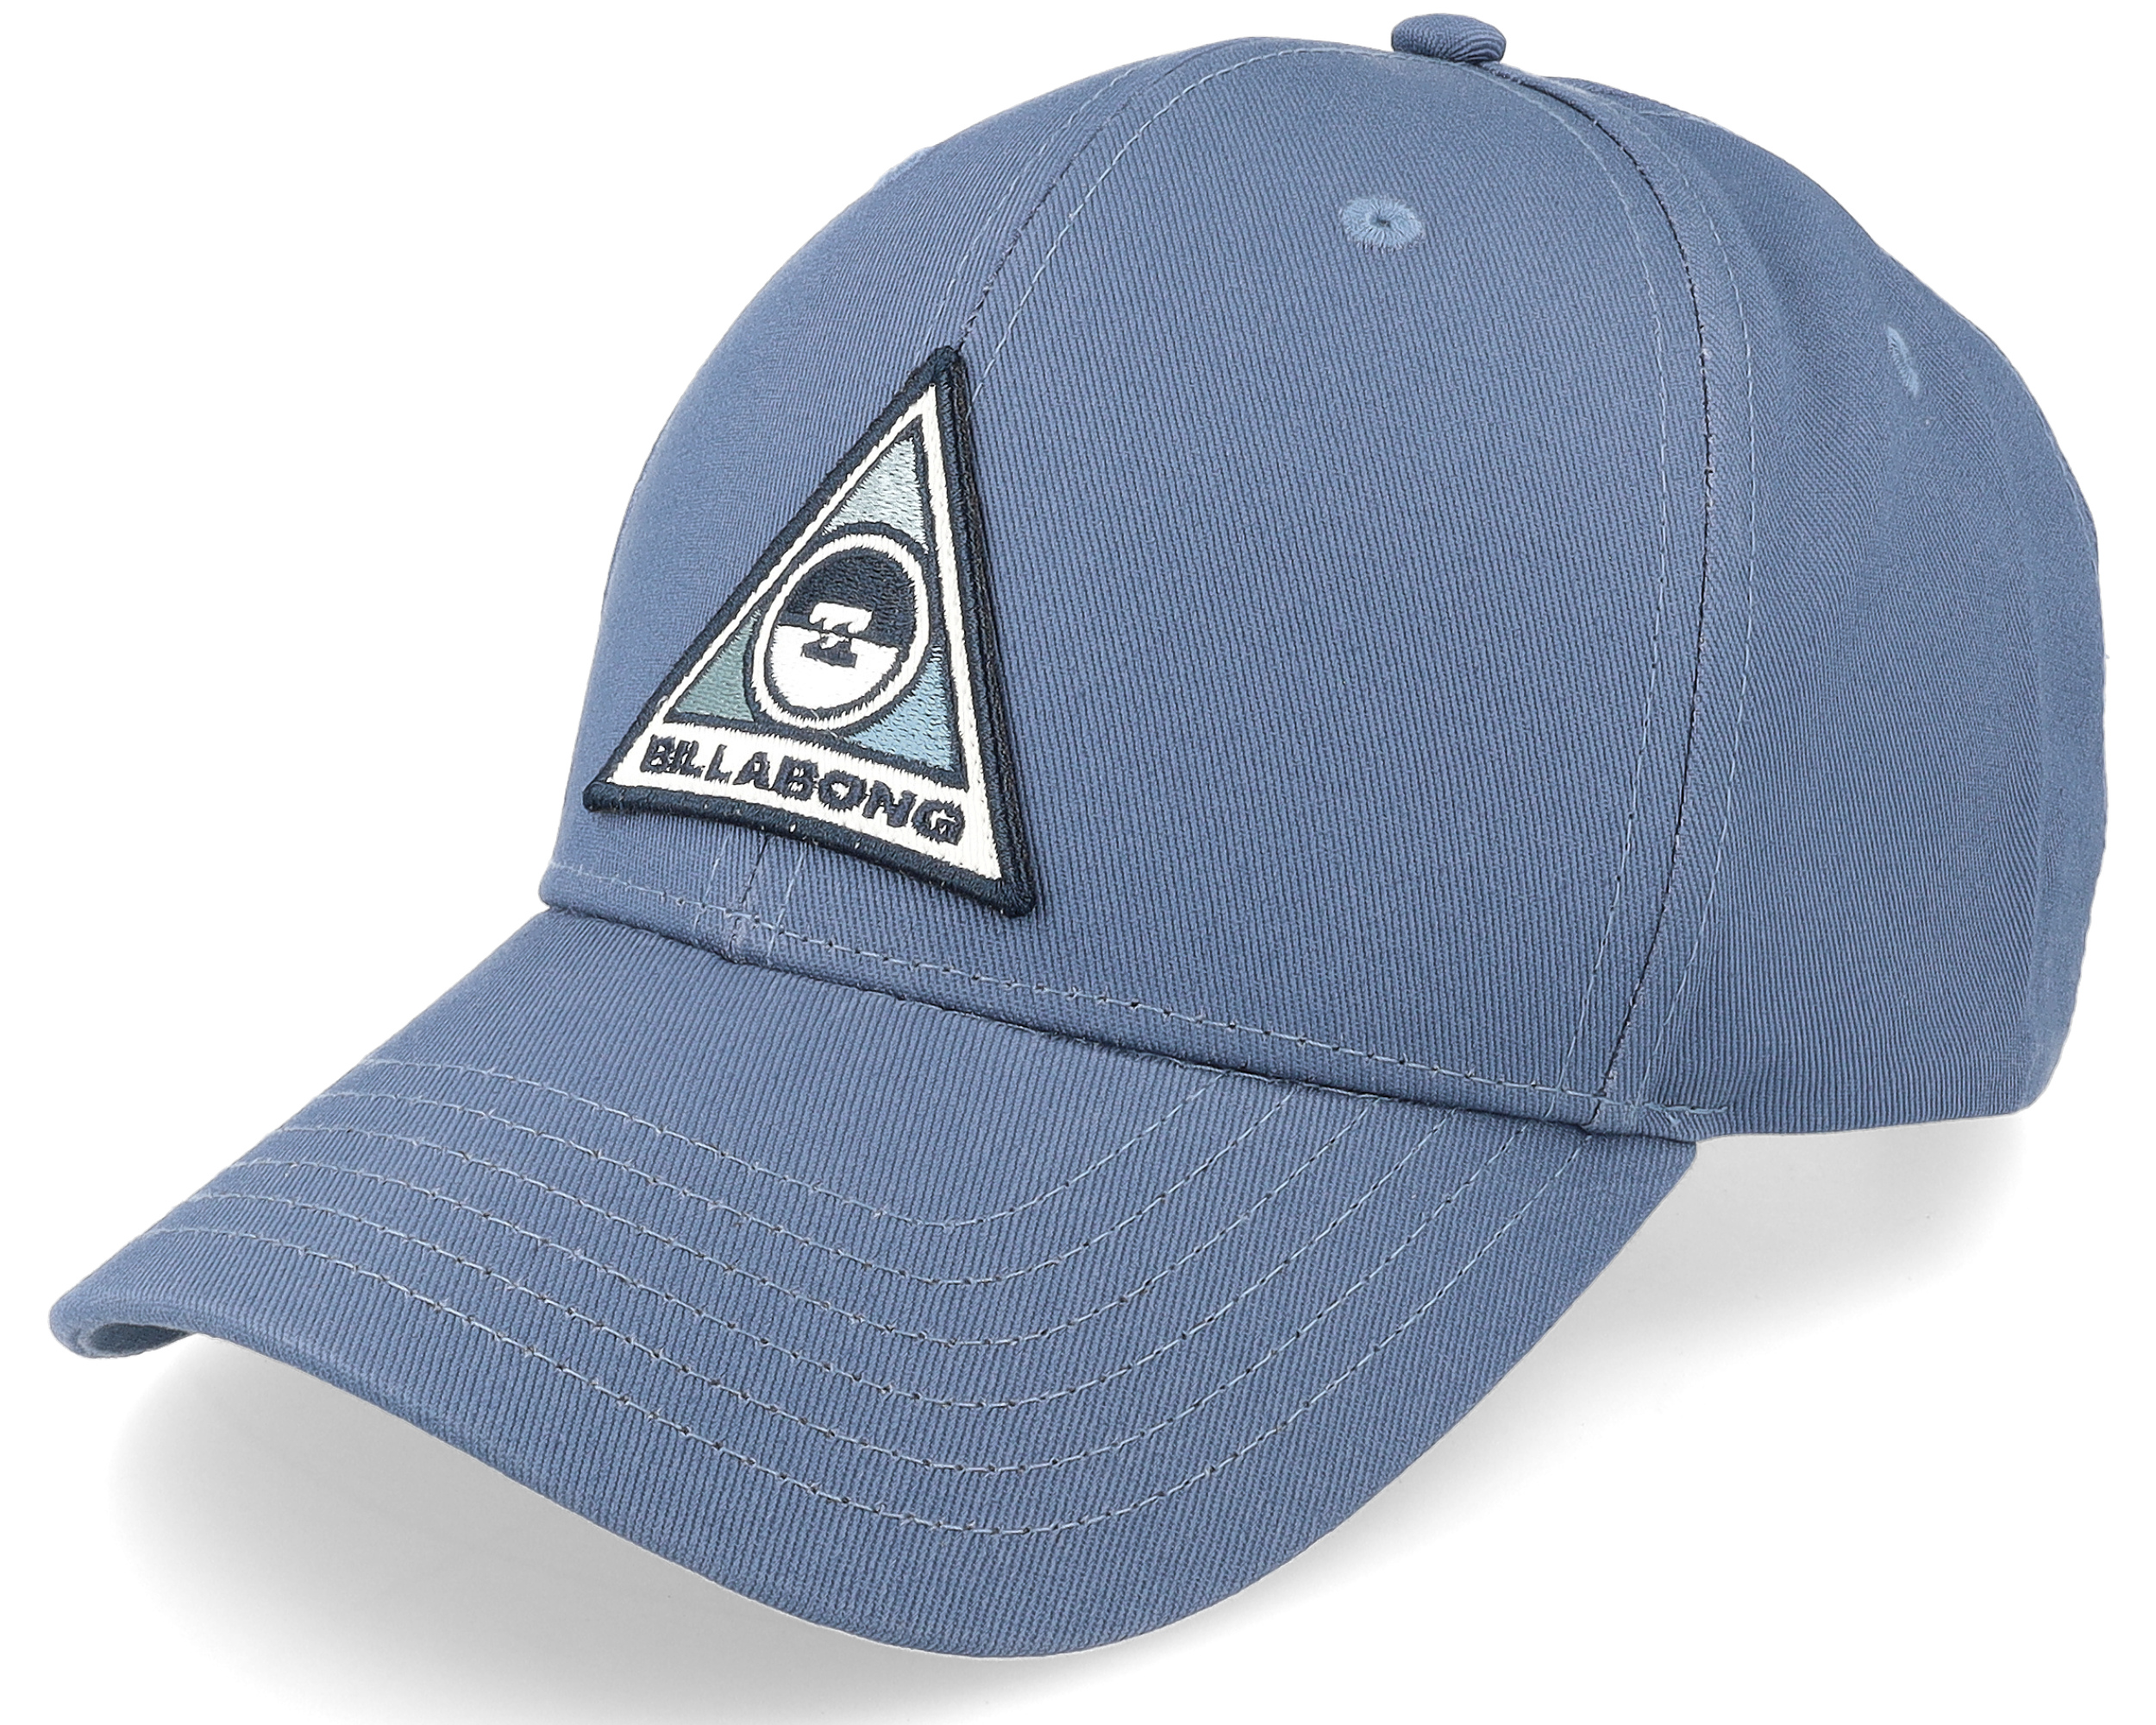 Walled Washed Blue Adjustable cap Billabong 